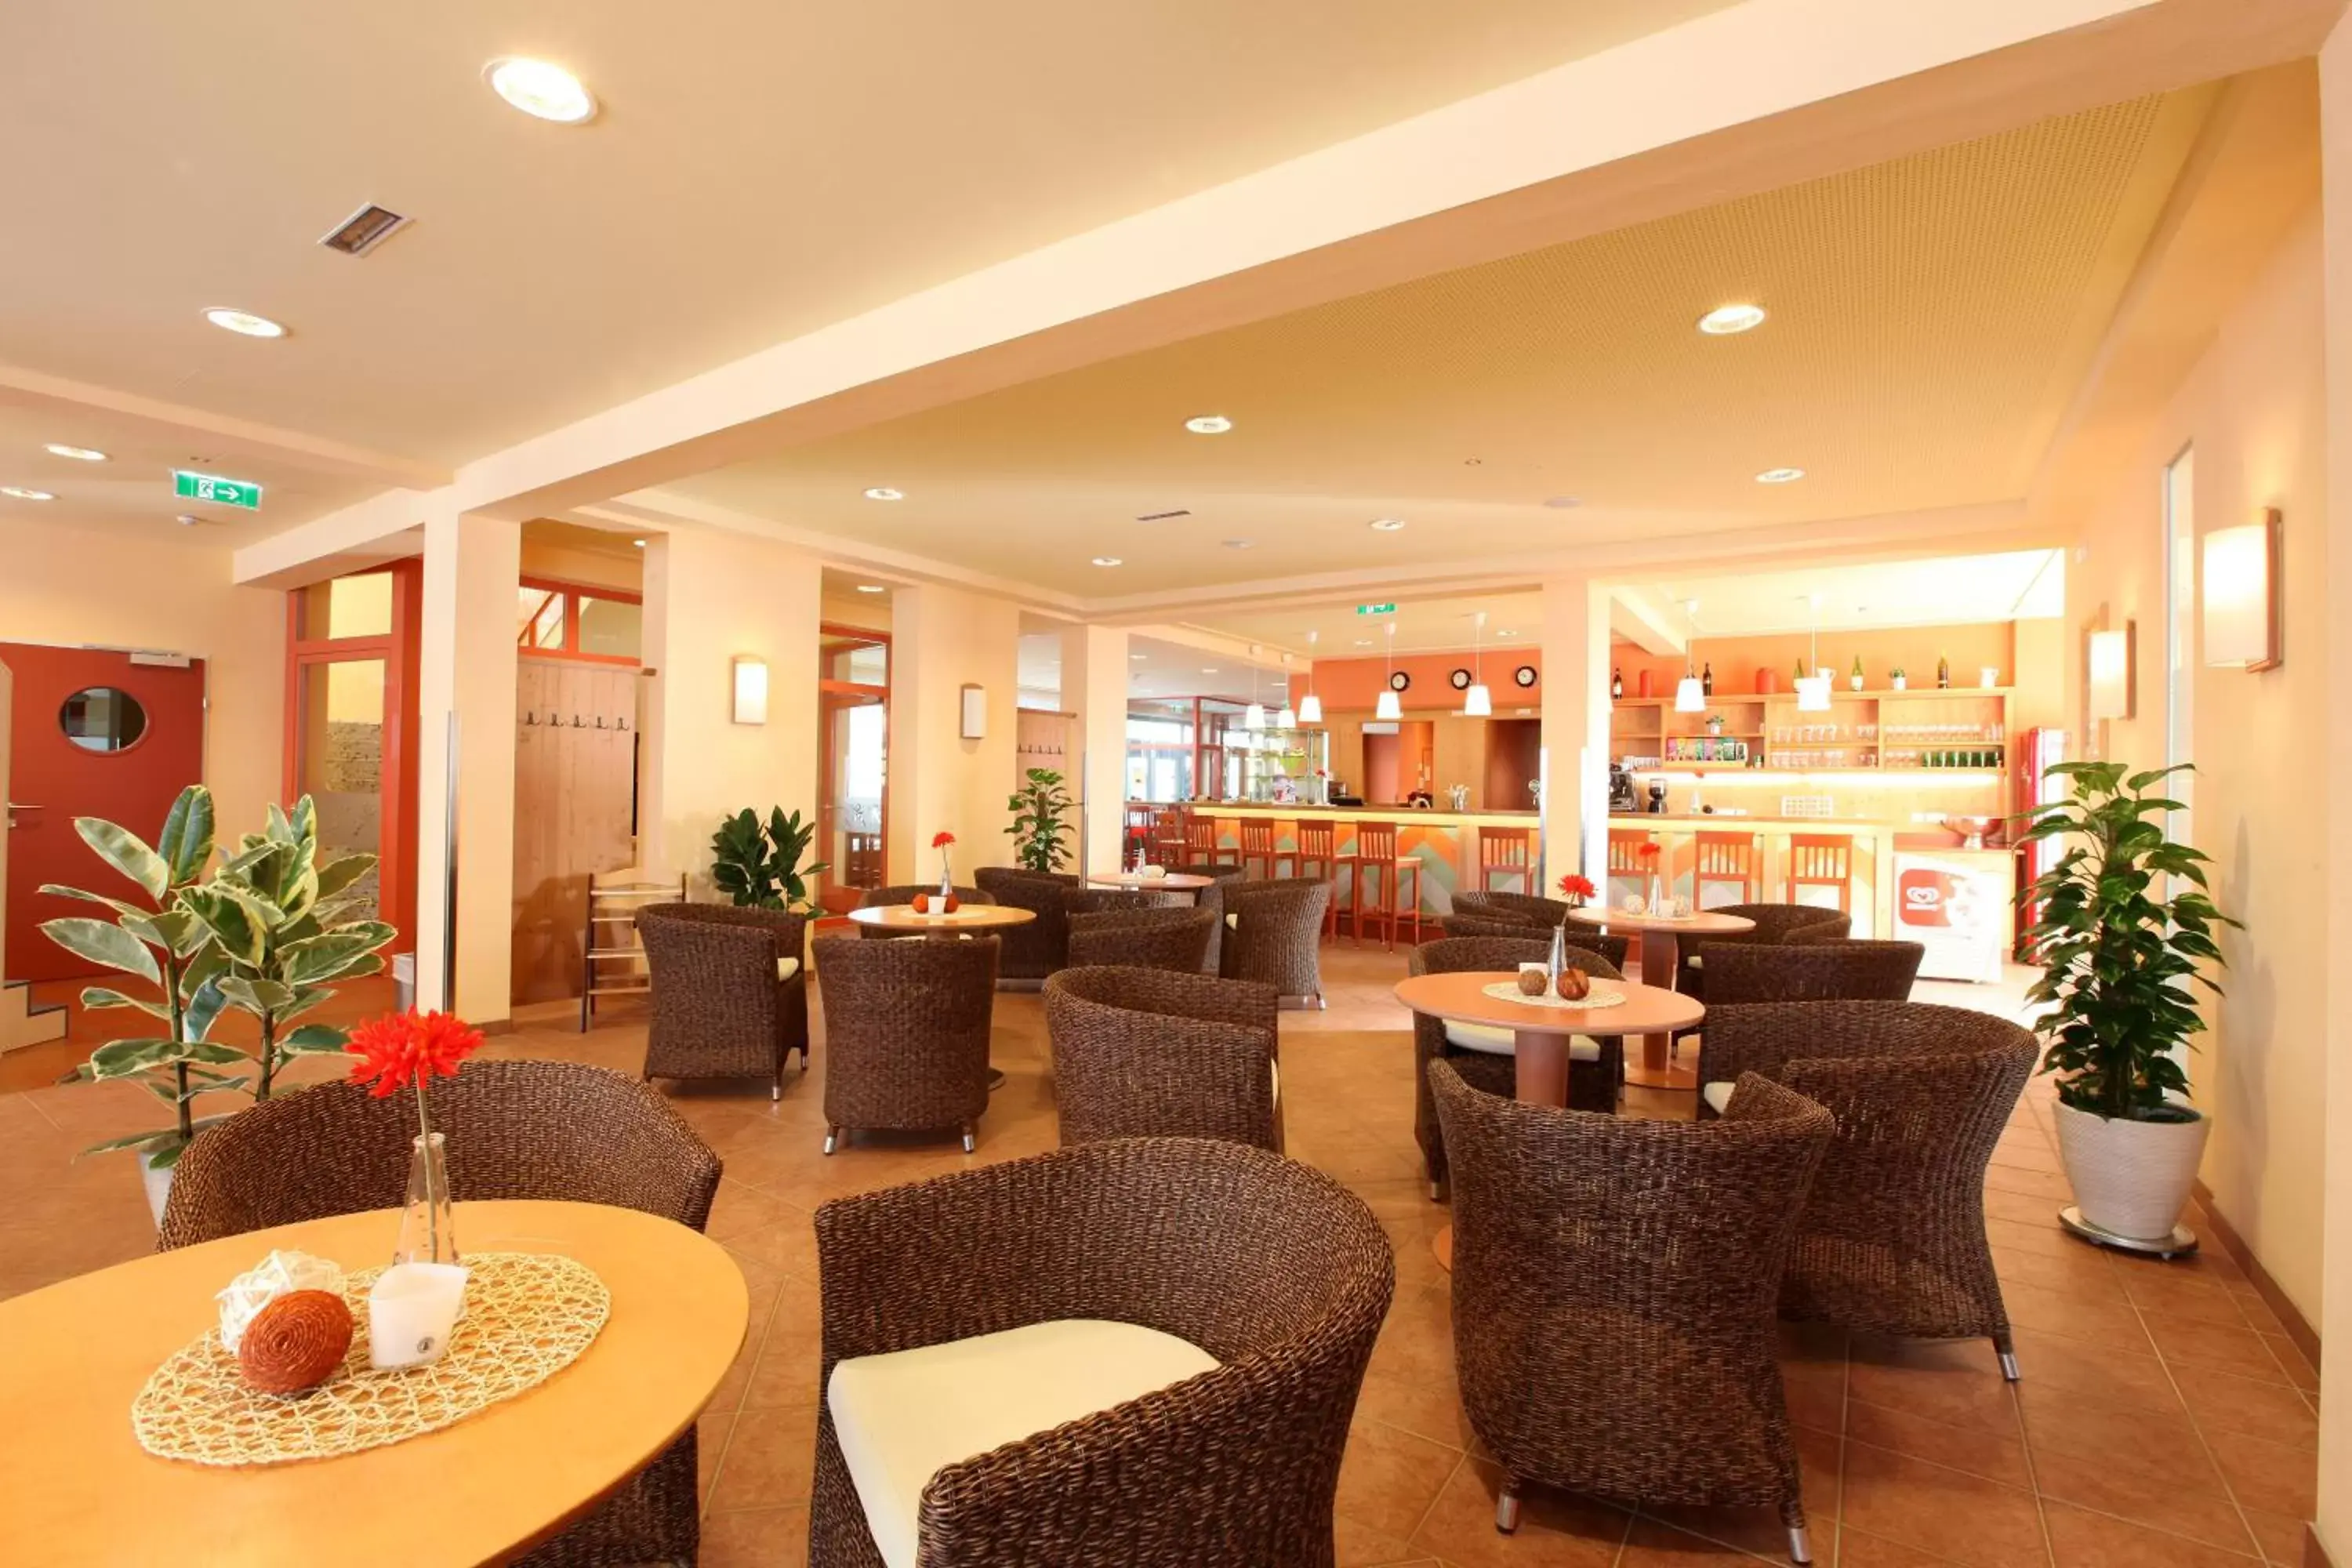 Lobby or reception in JUFA Hotel Lungau